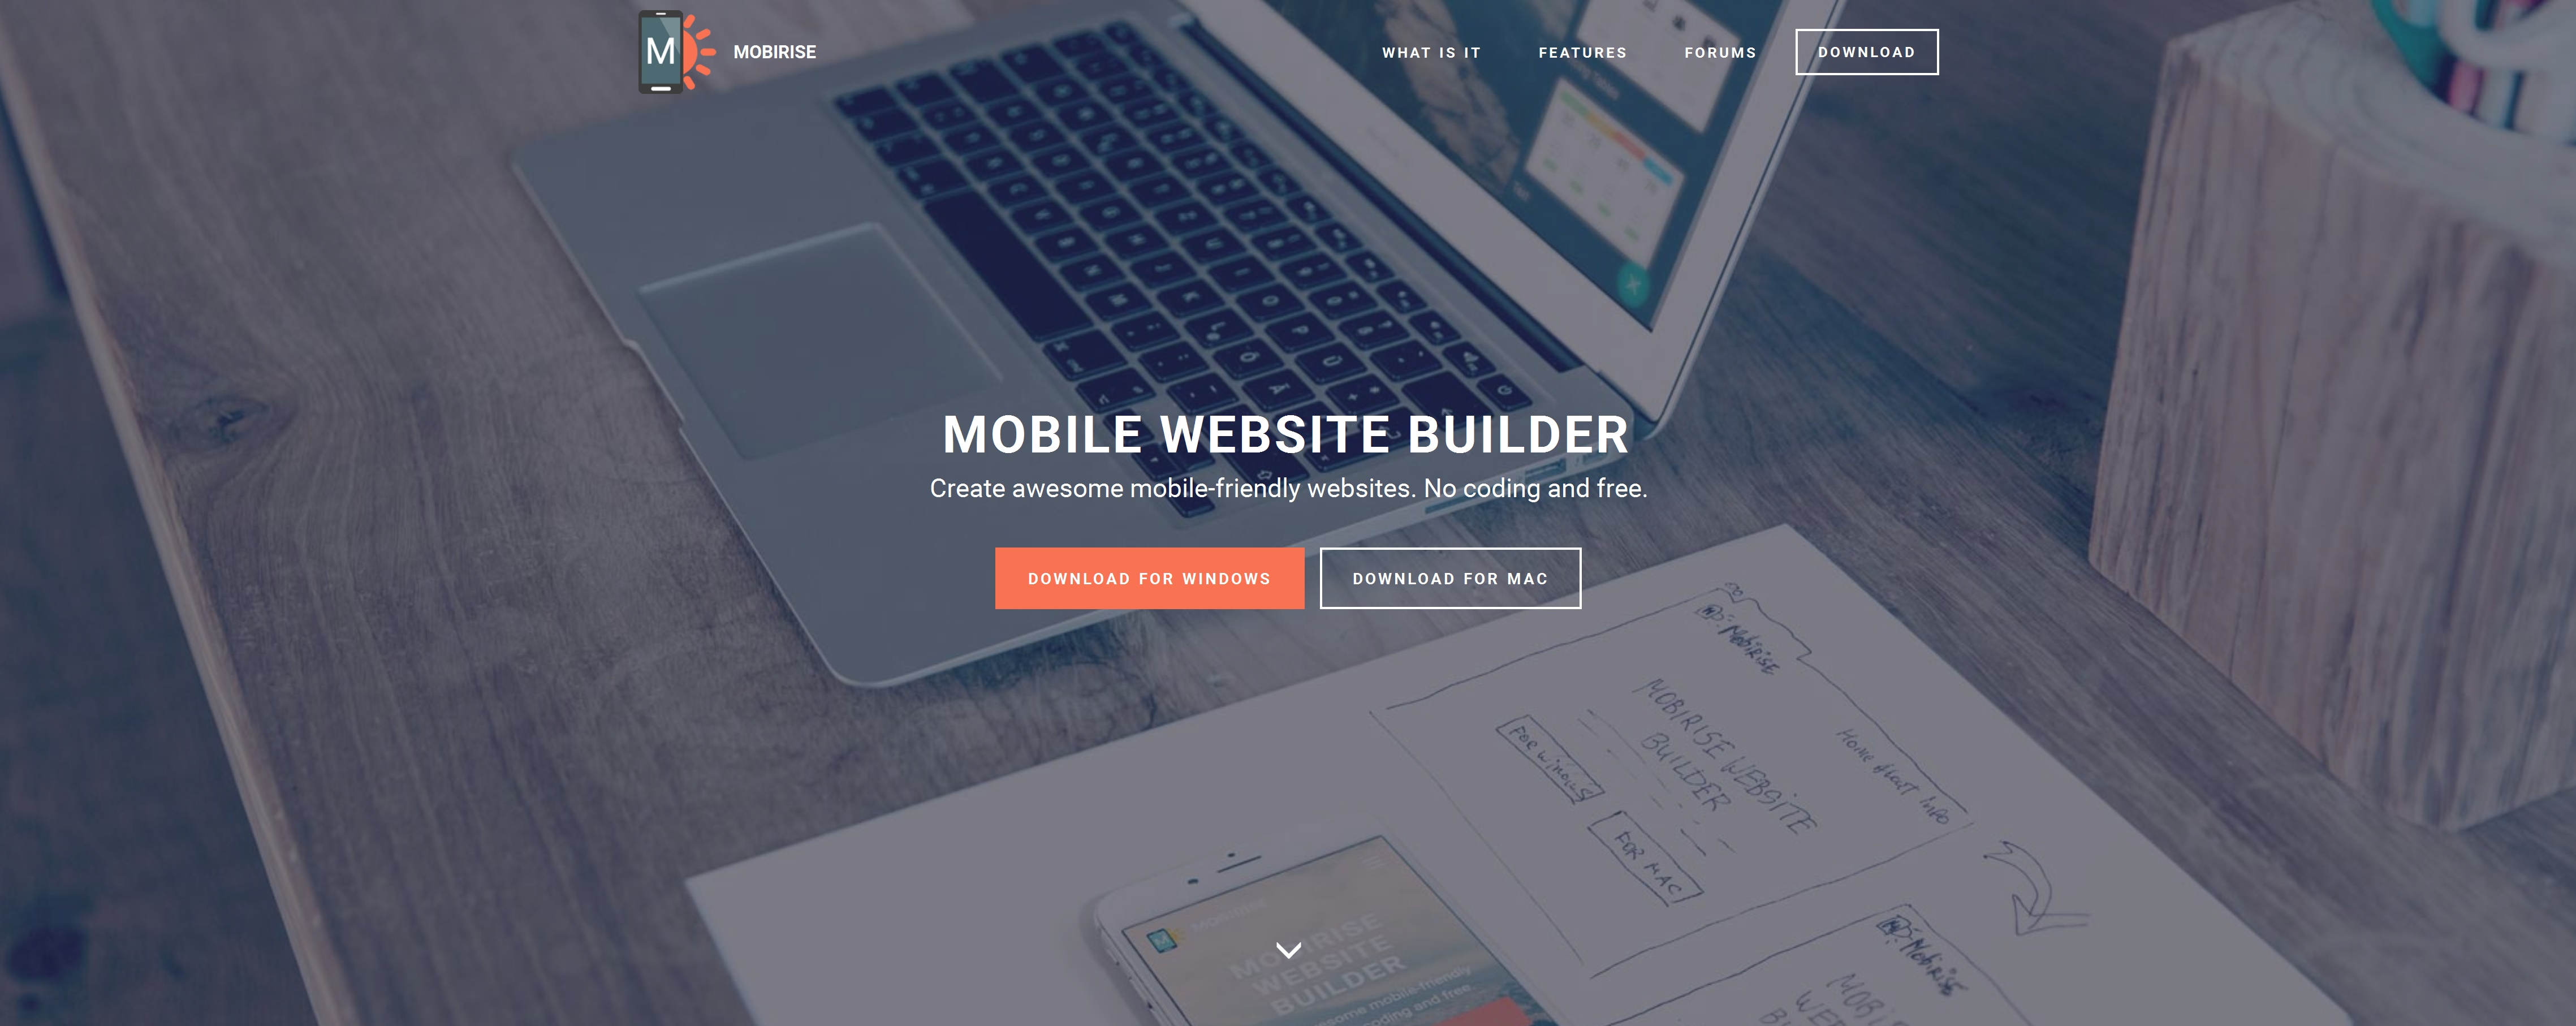  Mobile Website Builder Software